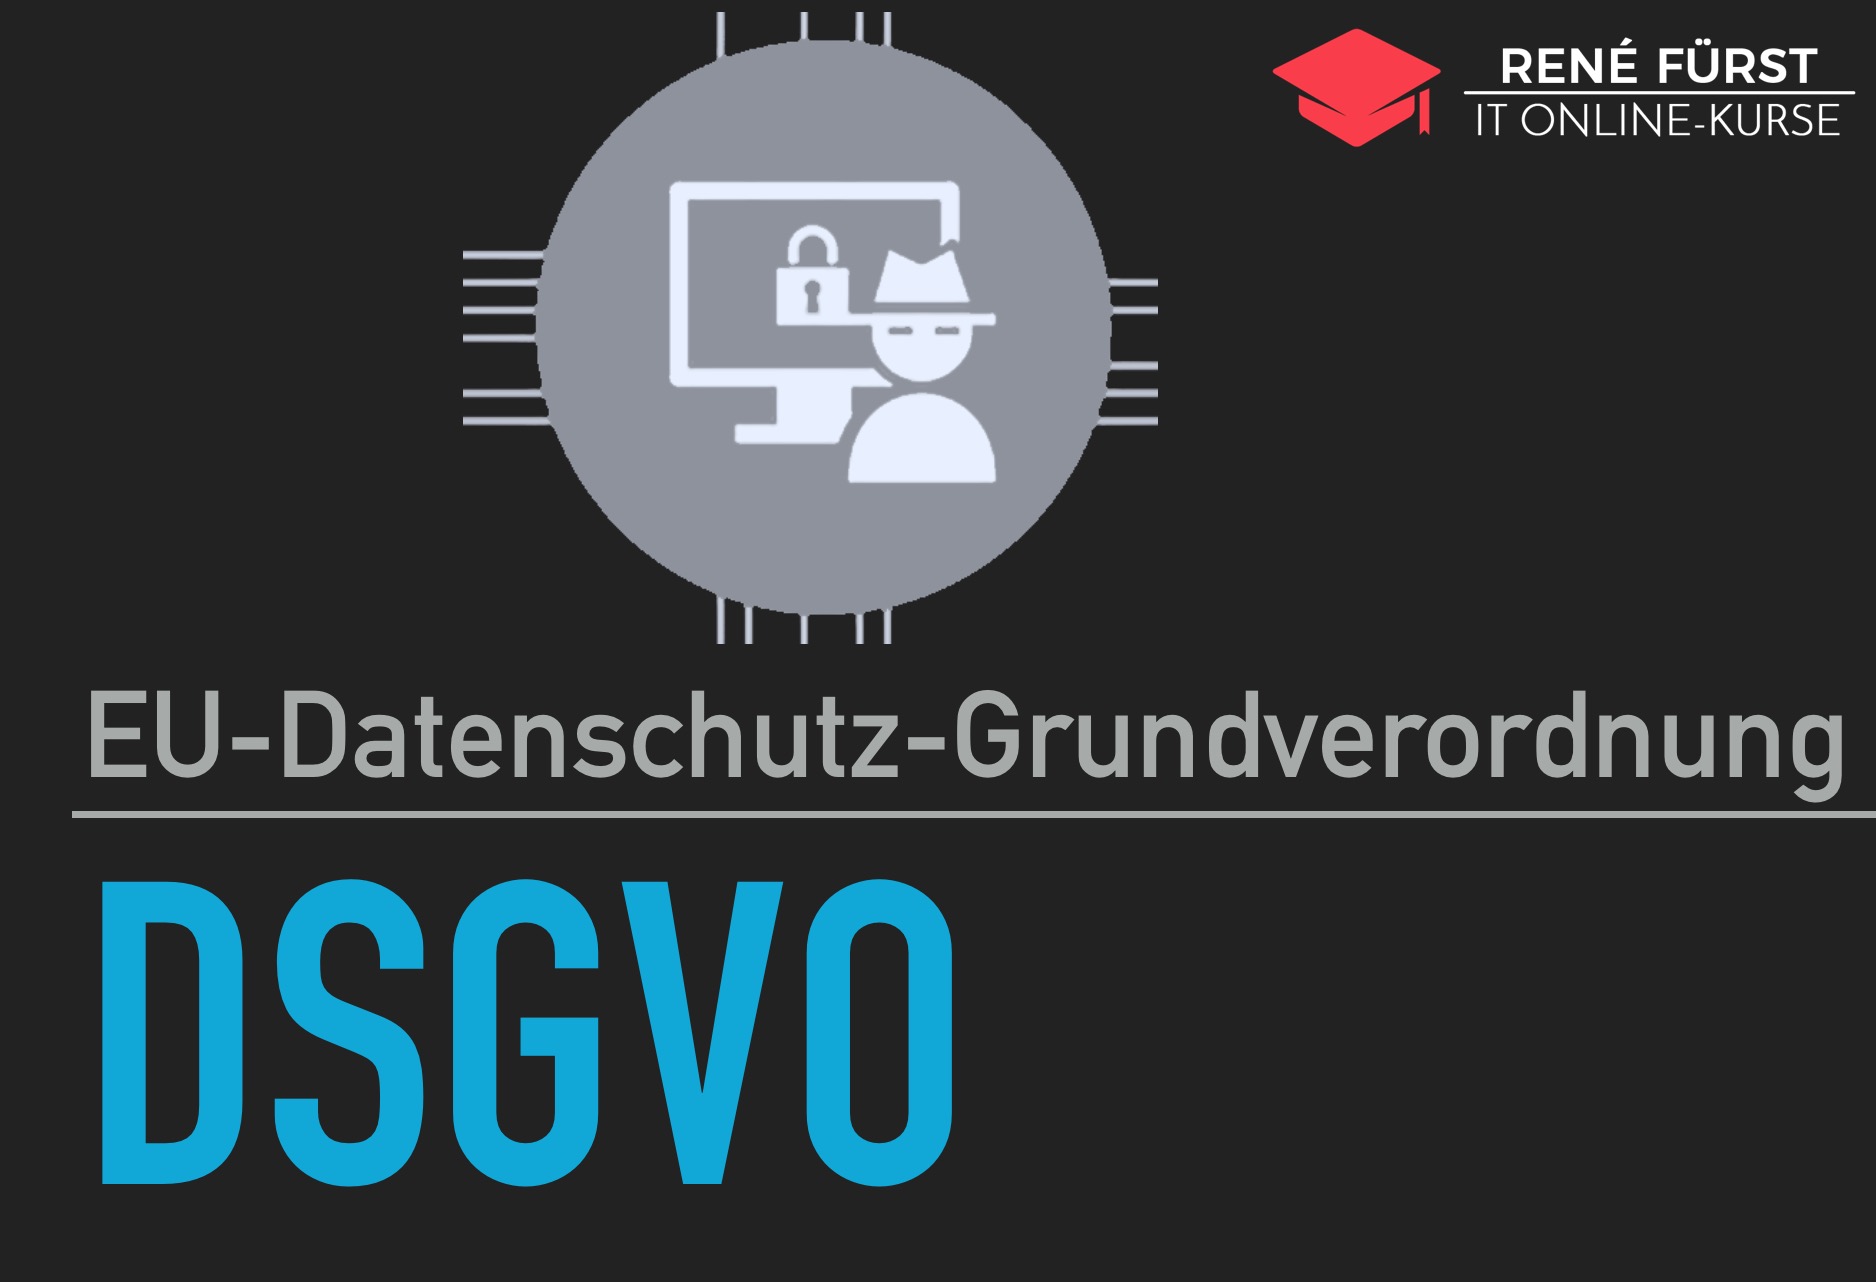 EU-Datenschutz-Grundverordnung; DSGVO